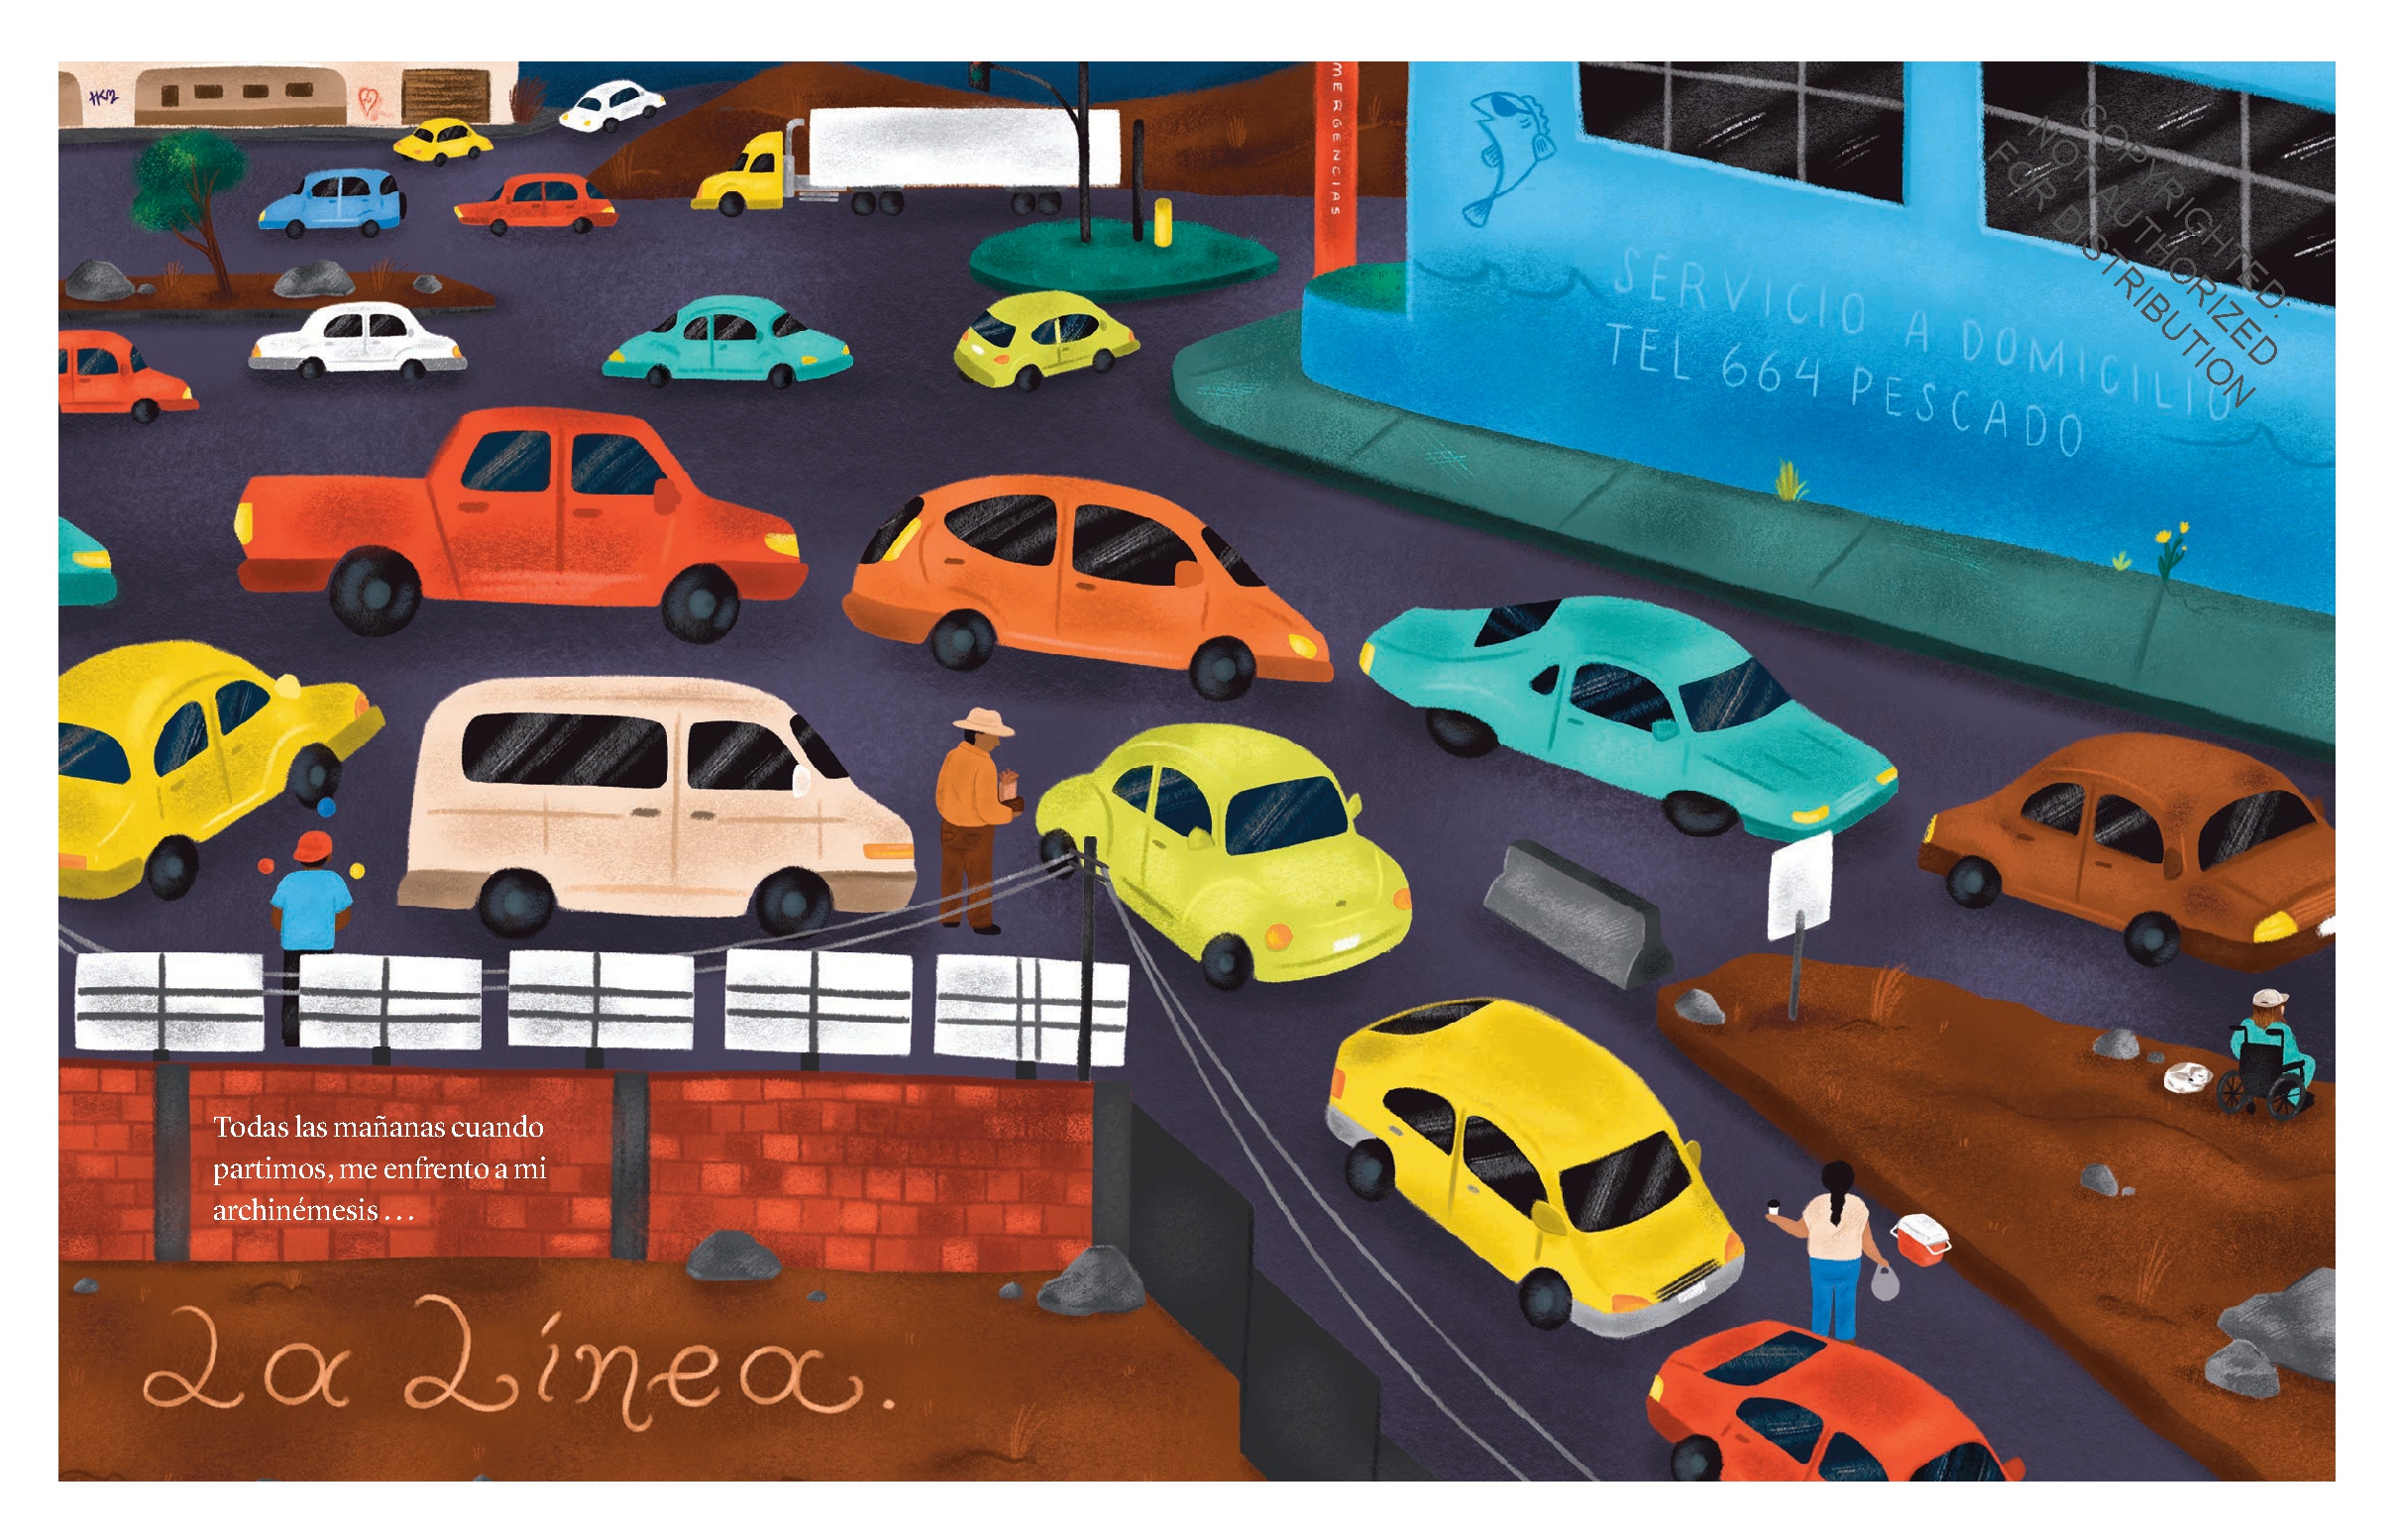 El viaje de Yenebi a la escuela (Yenebi's Drive to School Spanish edition)